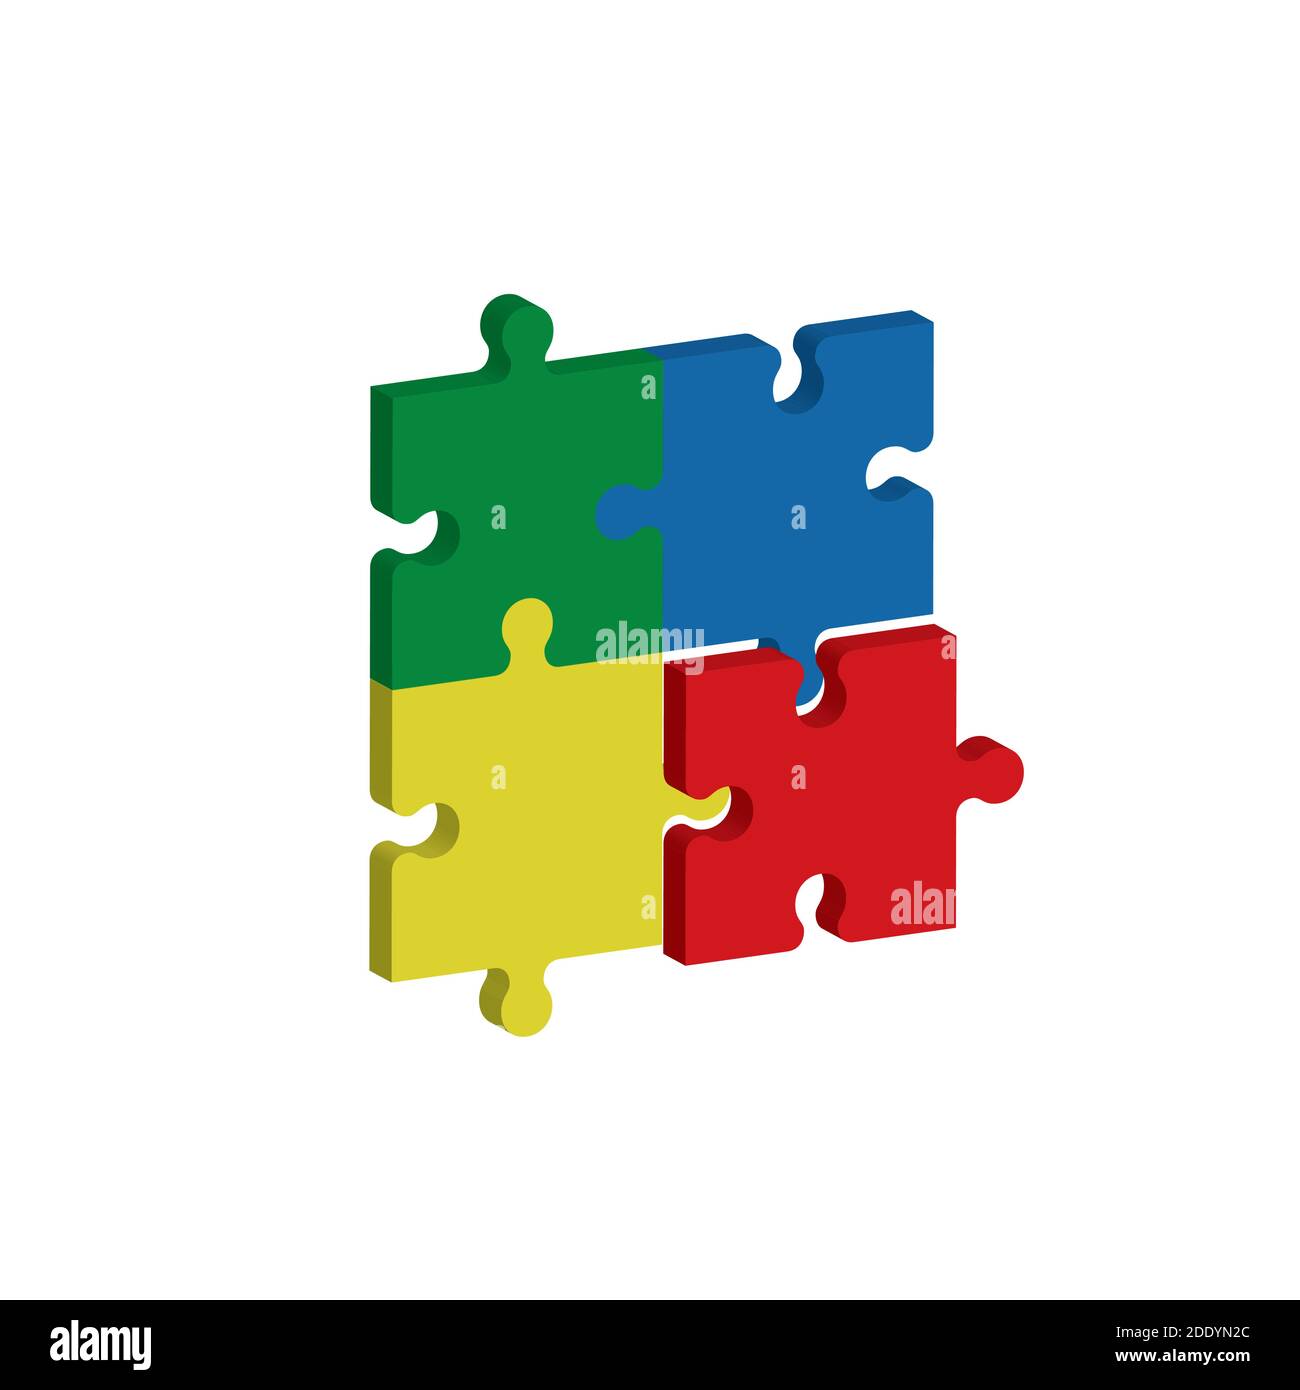 Vier Puzzleteile, rot, blau, grün und gelb, kommen in drei Dimensionen zusammen. Teamwork-Konzept. Vektorgrafik. Stock Vektor